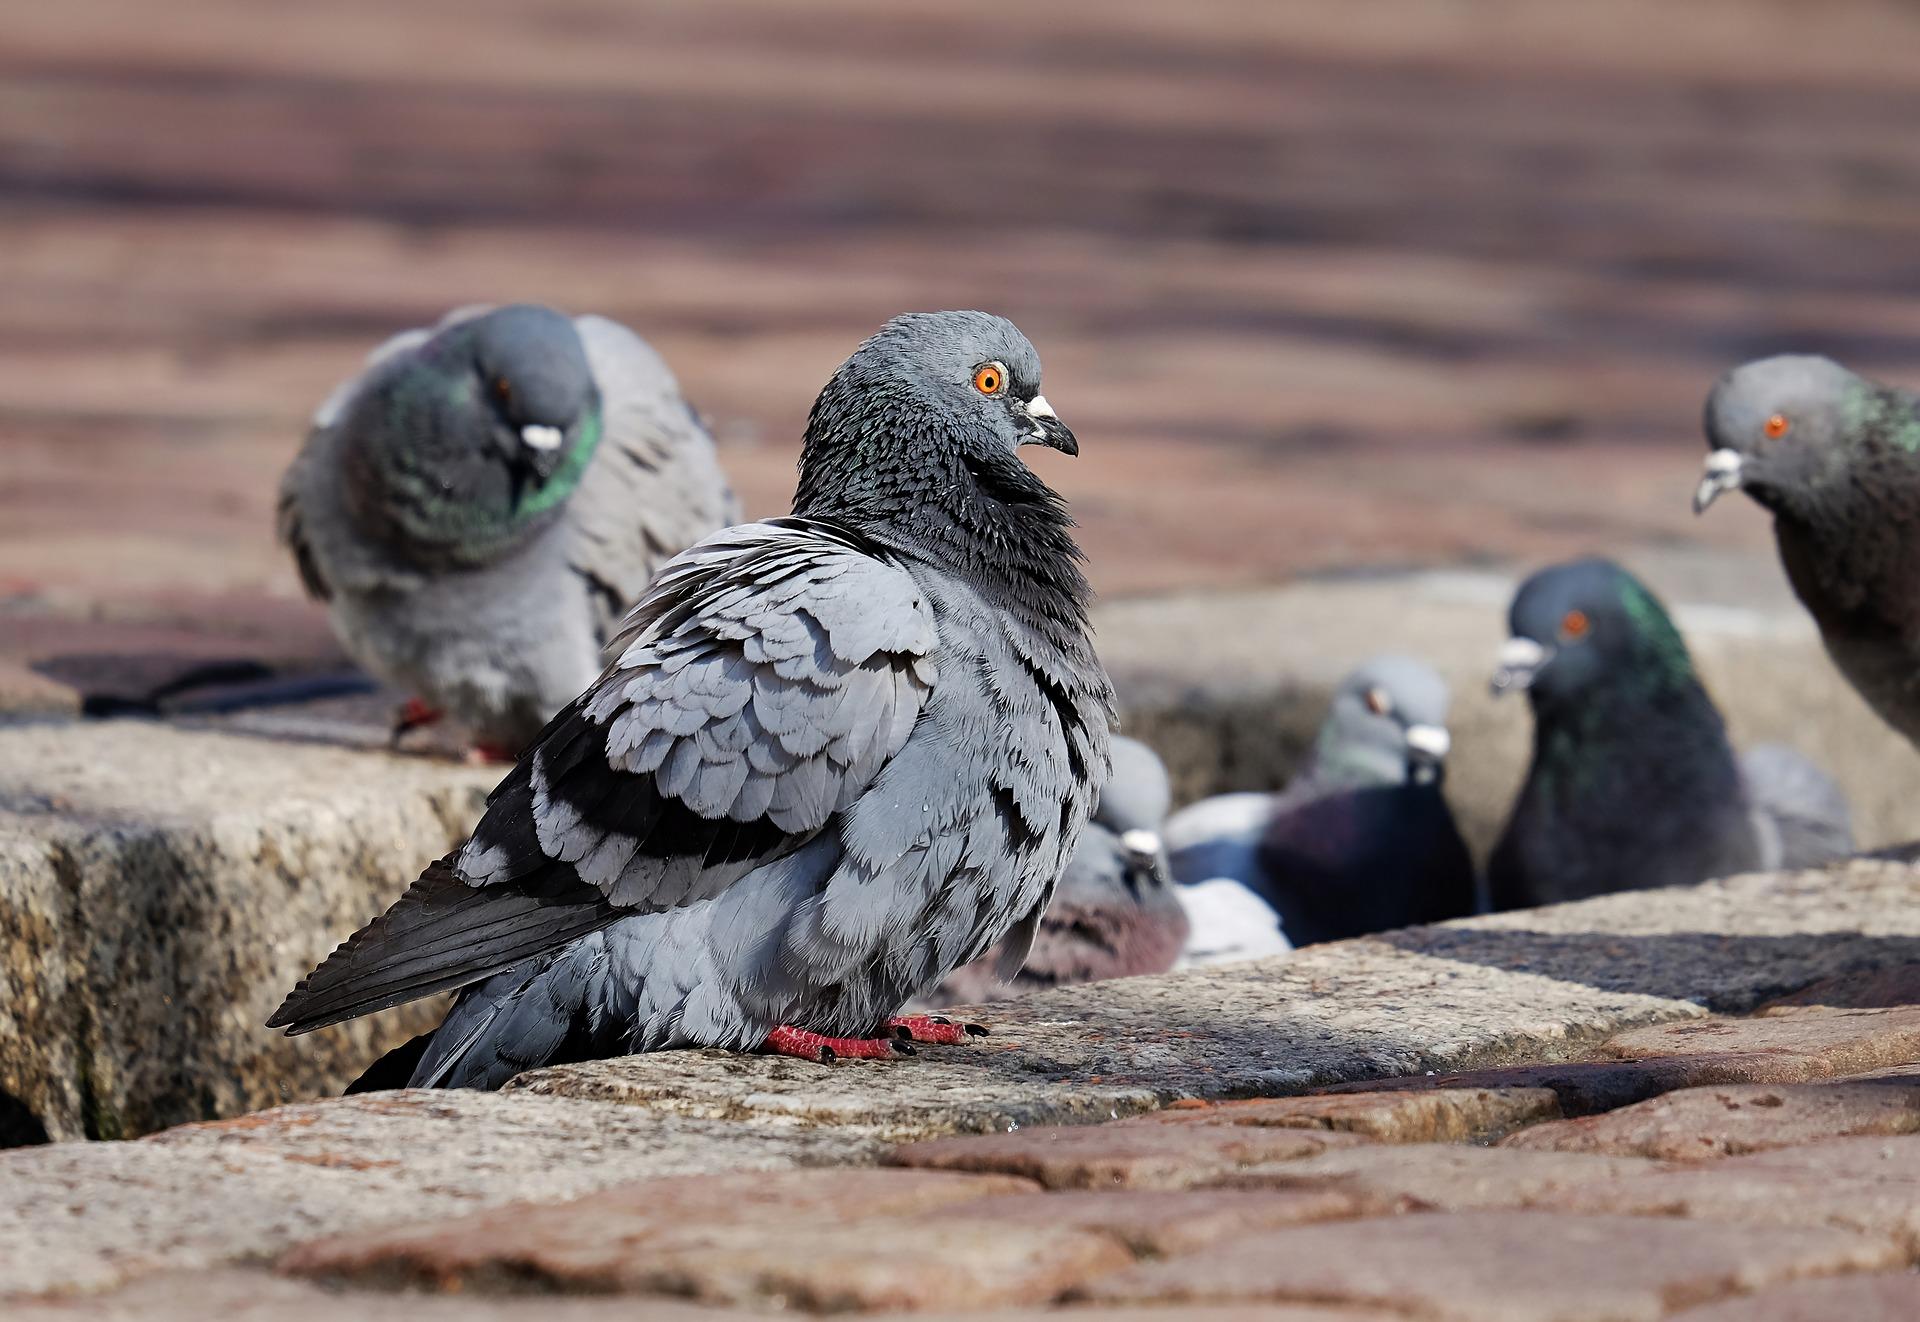 PW – La régulation des pigeons en centre urbain, une question de bien-être animal